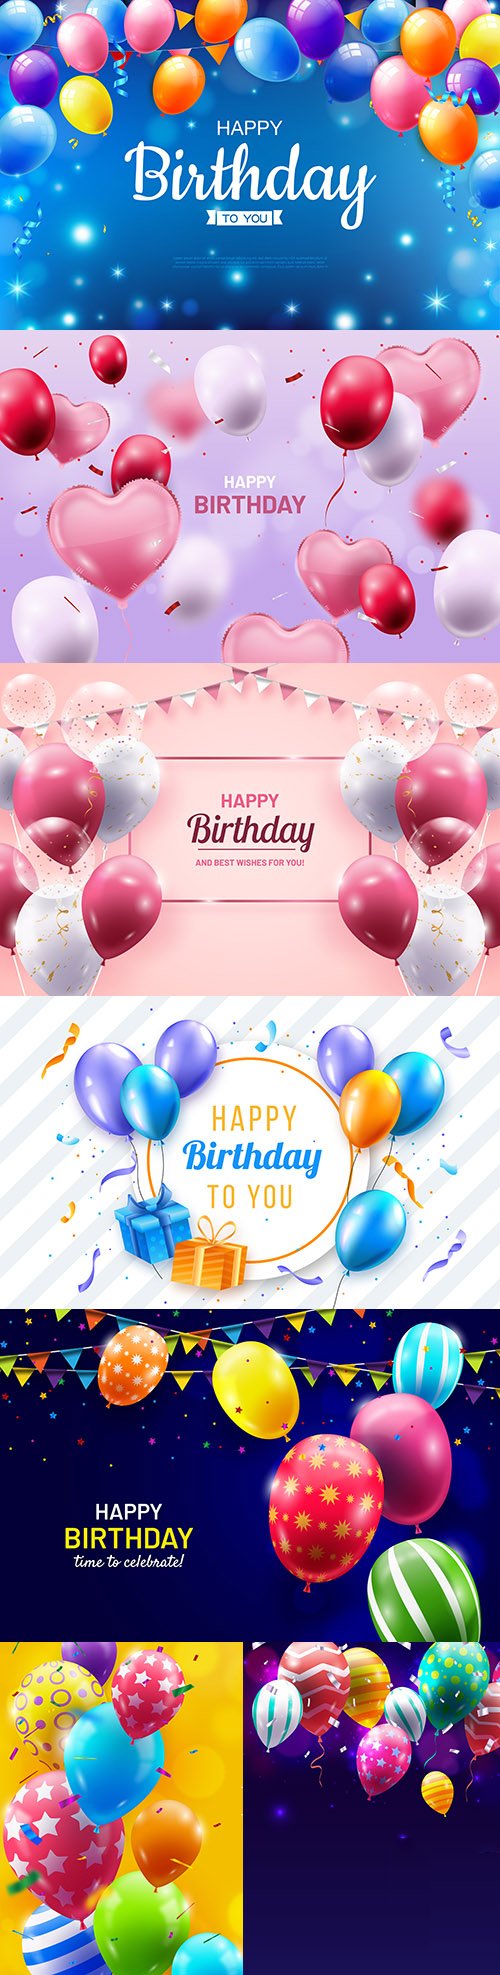 Happy birthday holiday invitation realistic balloons 6